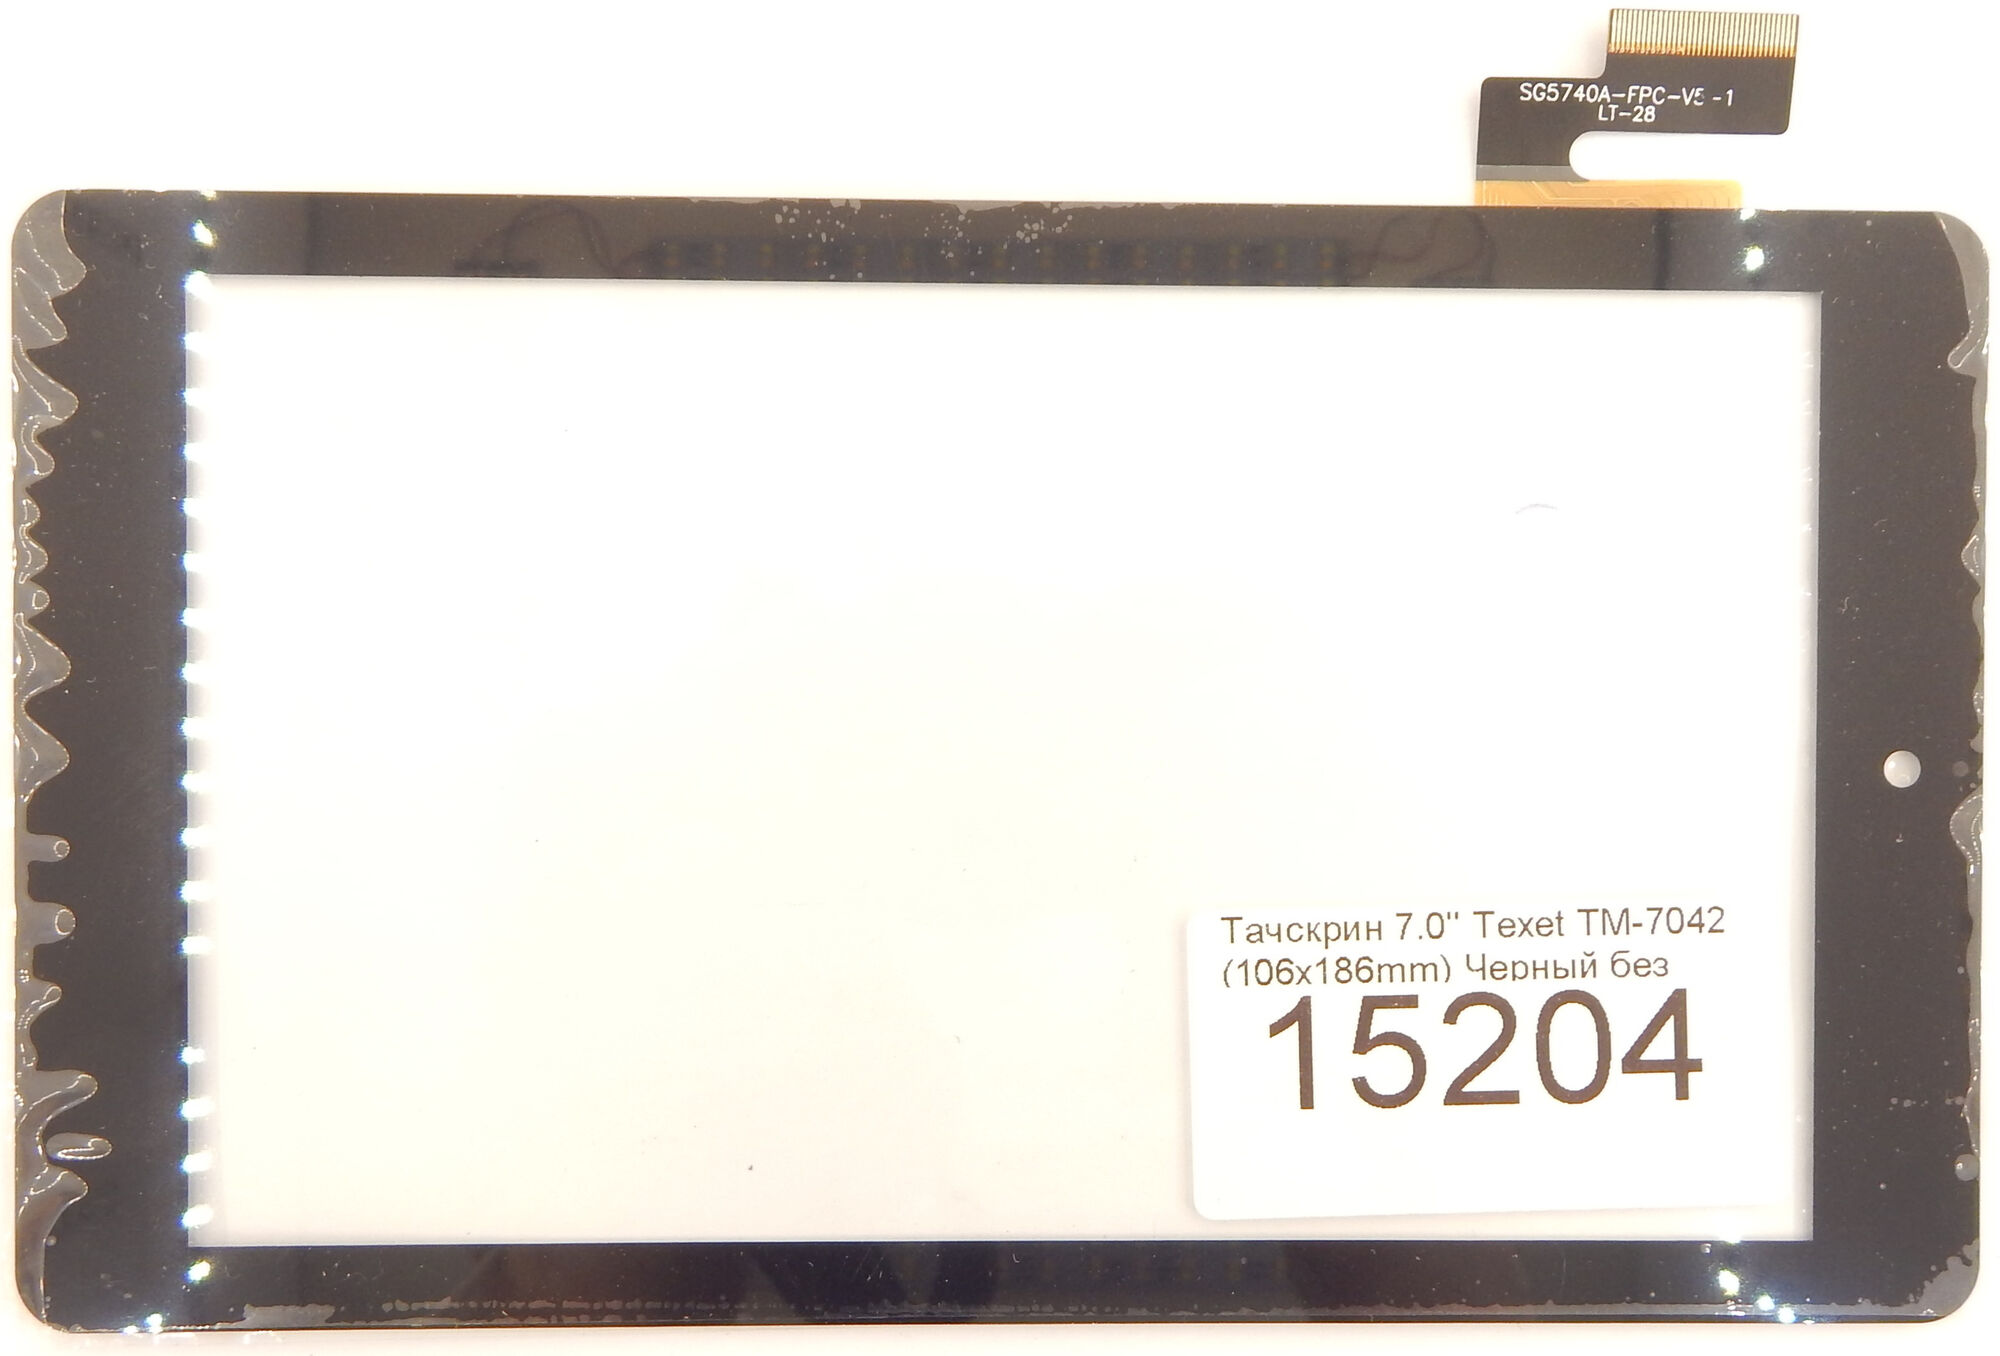 Тачскрин 7.0'' Texet TM-7042 36 pin (106x186mm) Черный без выреза p/n: SG5740A-FPC V4-1